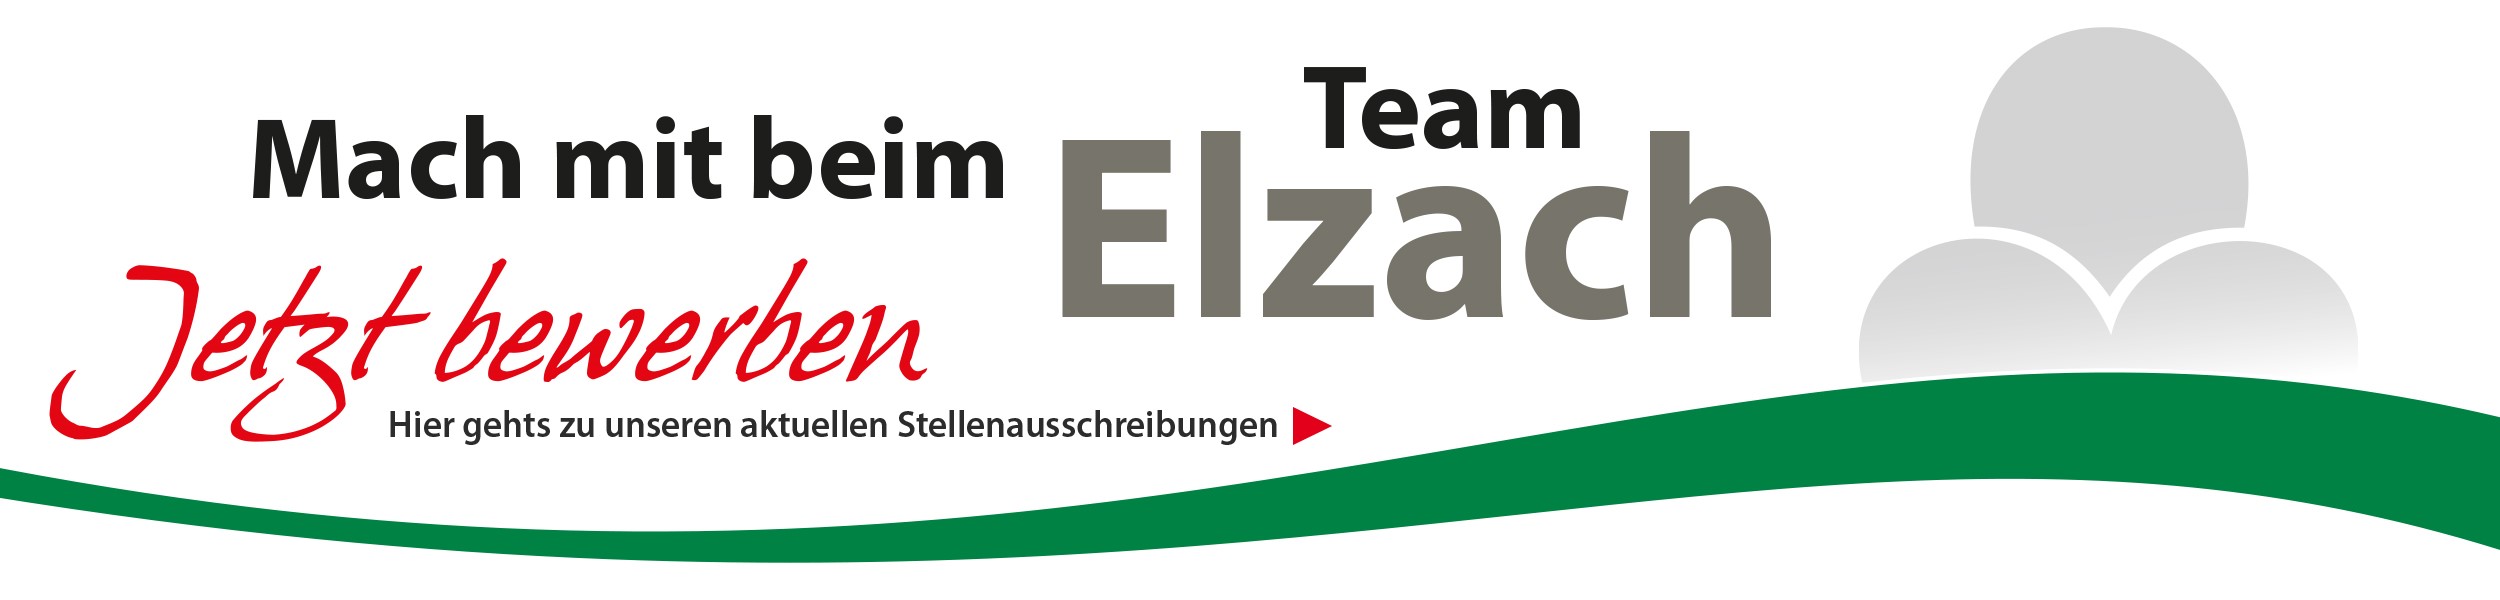 Stadt Elzach - Aktuelle Stellenangebote 